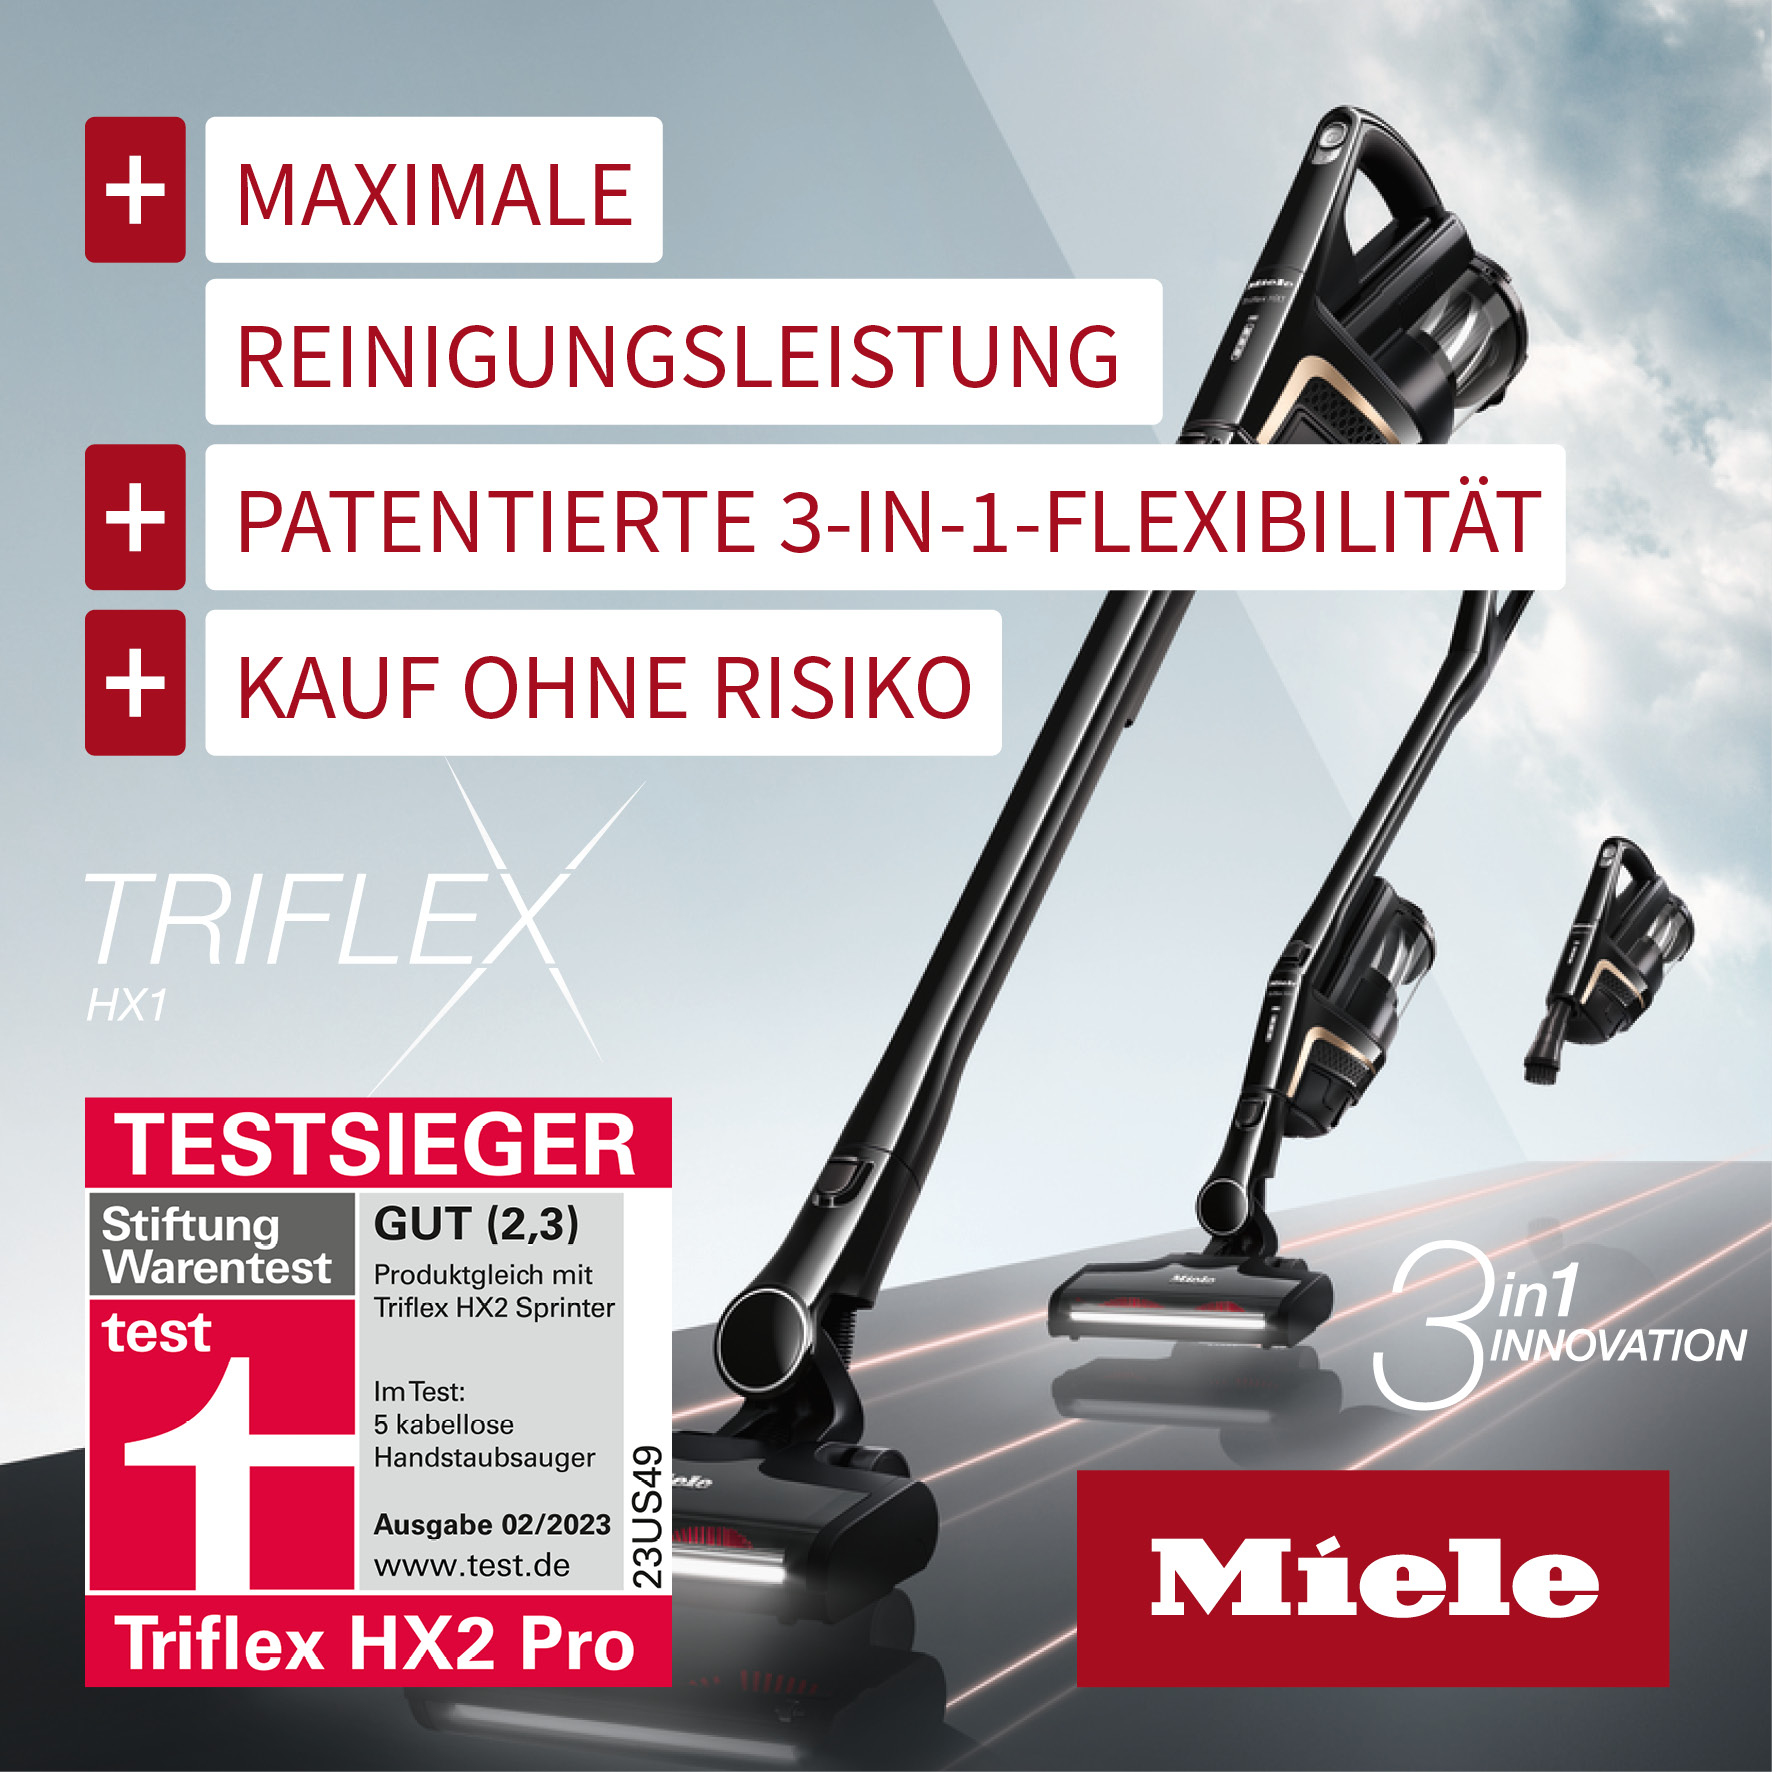 Miele Triflex HX2 Pro mit Geld-zurück-Garantie. Jetzt bei Bloch & Müller in Ingelheim